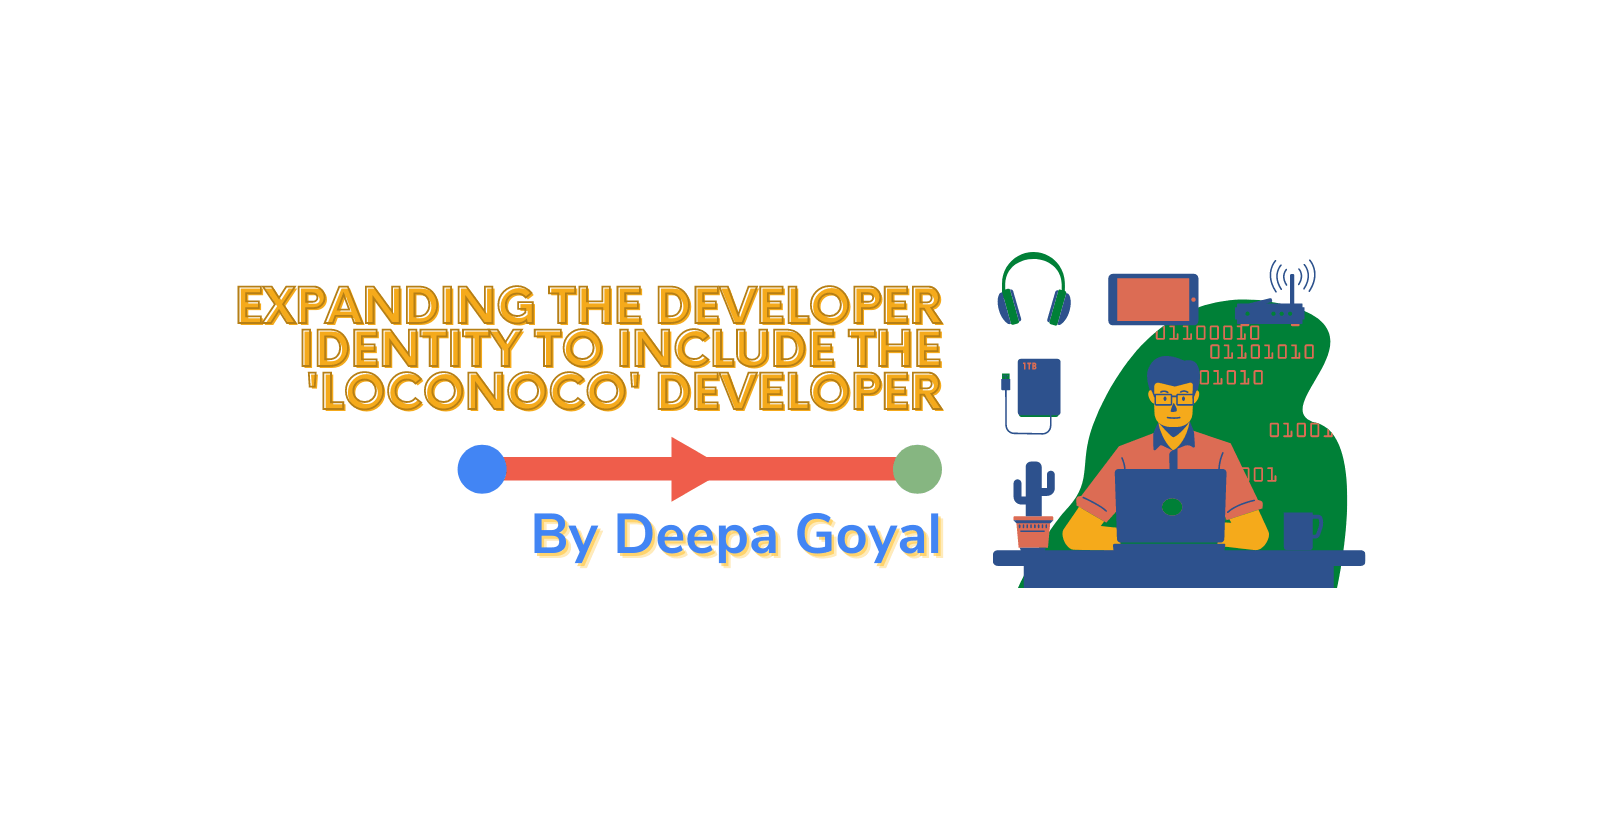 Expanding the developer identity to include the 'loconoco' developer